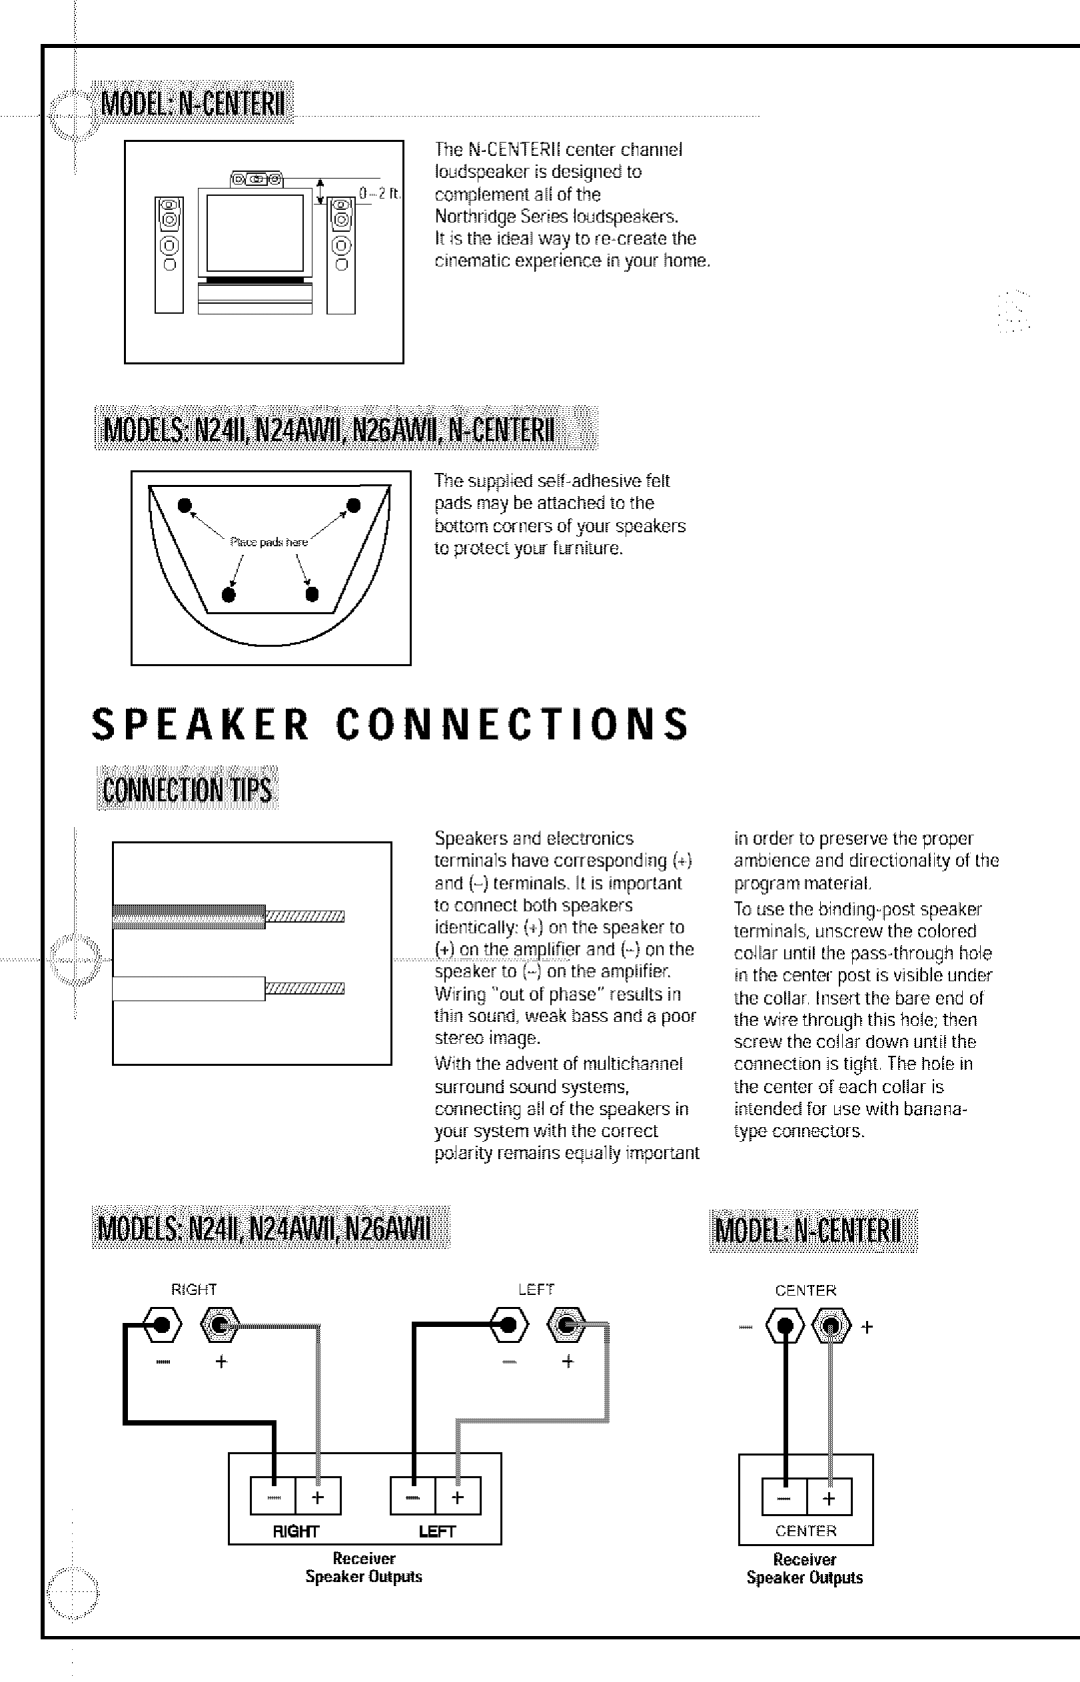 JBL N26AWII, N24II, N24AWII manual Speaker Connections, Ilecei ,er, SpeakerOutputs 